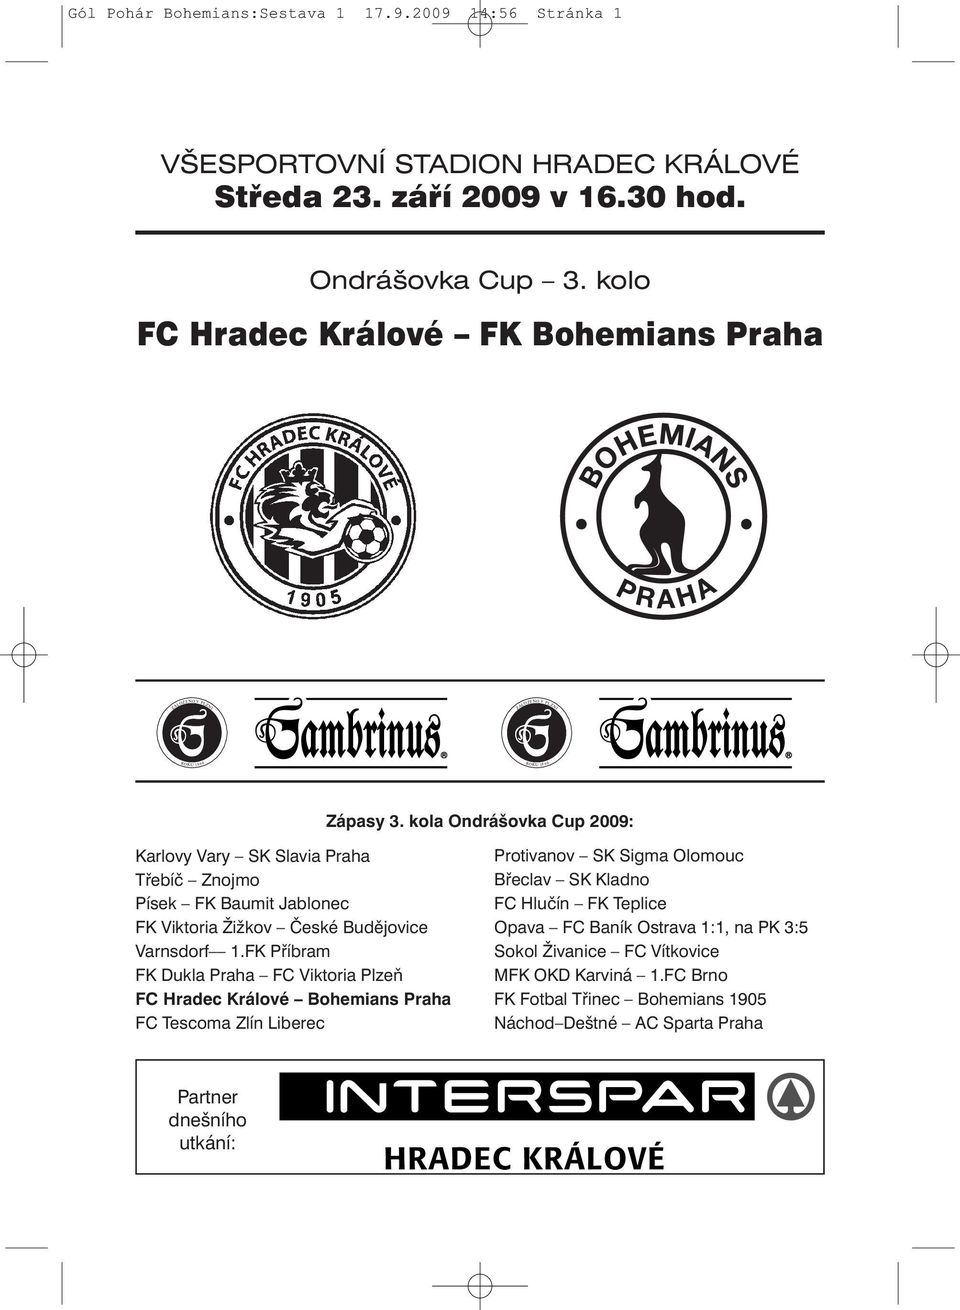 kola Ondrášovka Cup 2009: Karlovy Vary SK Slavia Praha Třebíč Znojmo Písek FK Baumit Jablonec FK Viktoria Žižkov České Budějovice Varnsdorf 1.